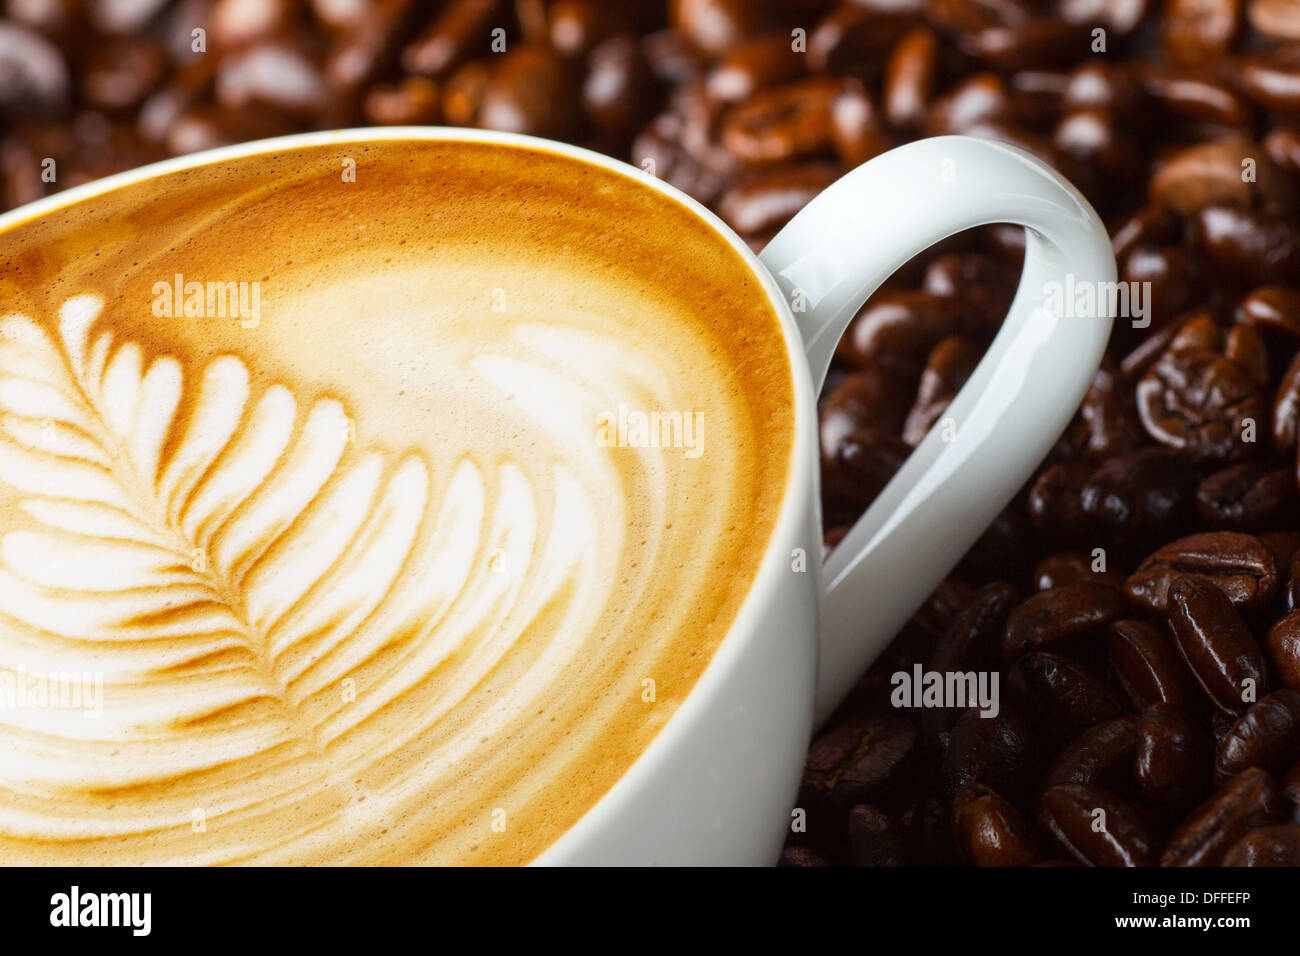 Le latte art, dans les fèves de café café contexte Banque D'Images